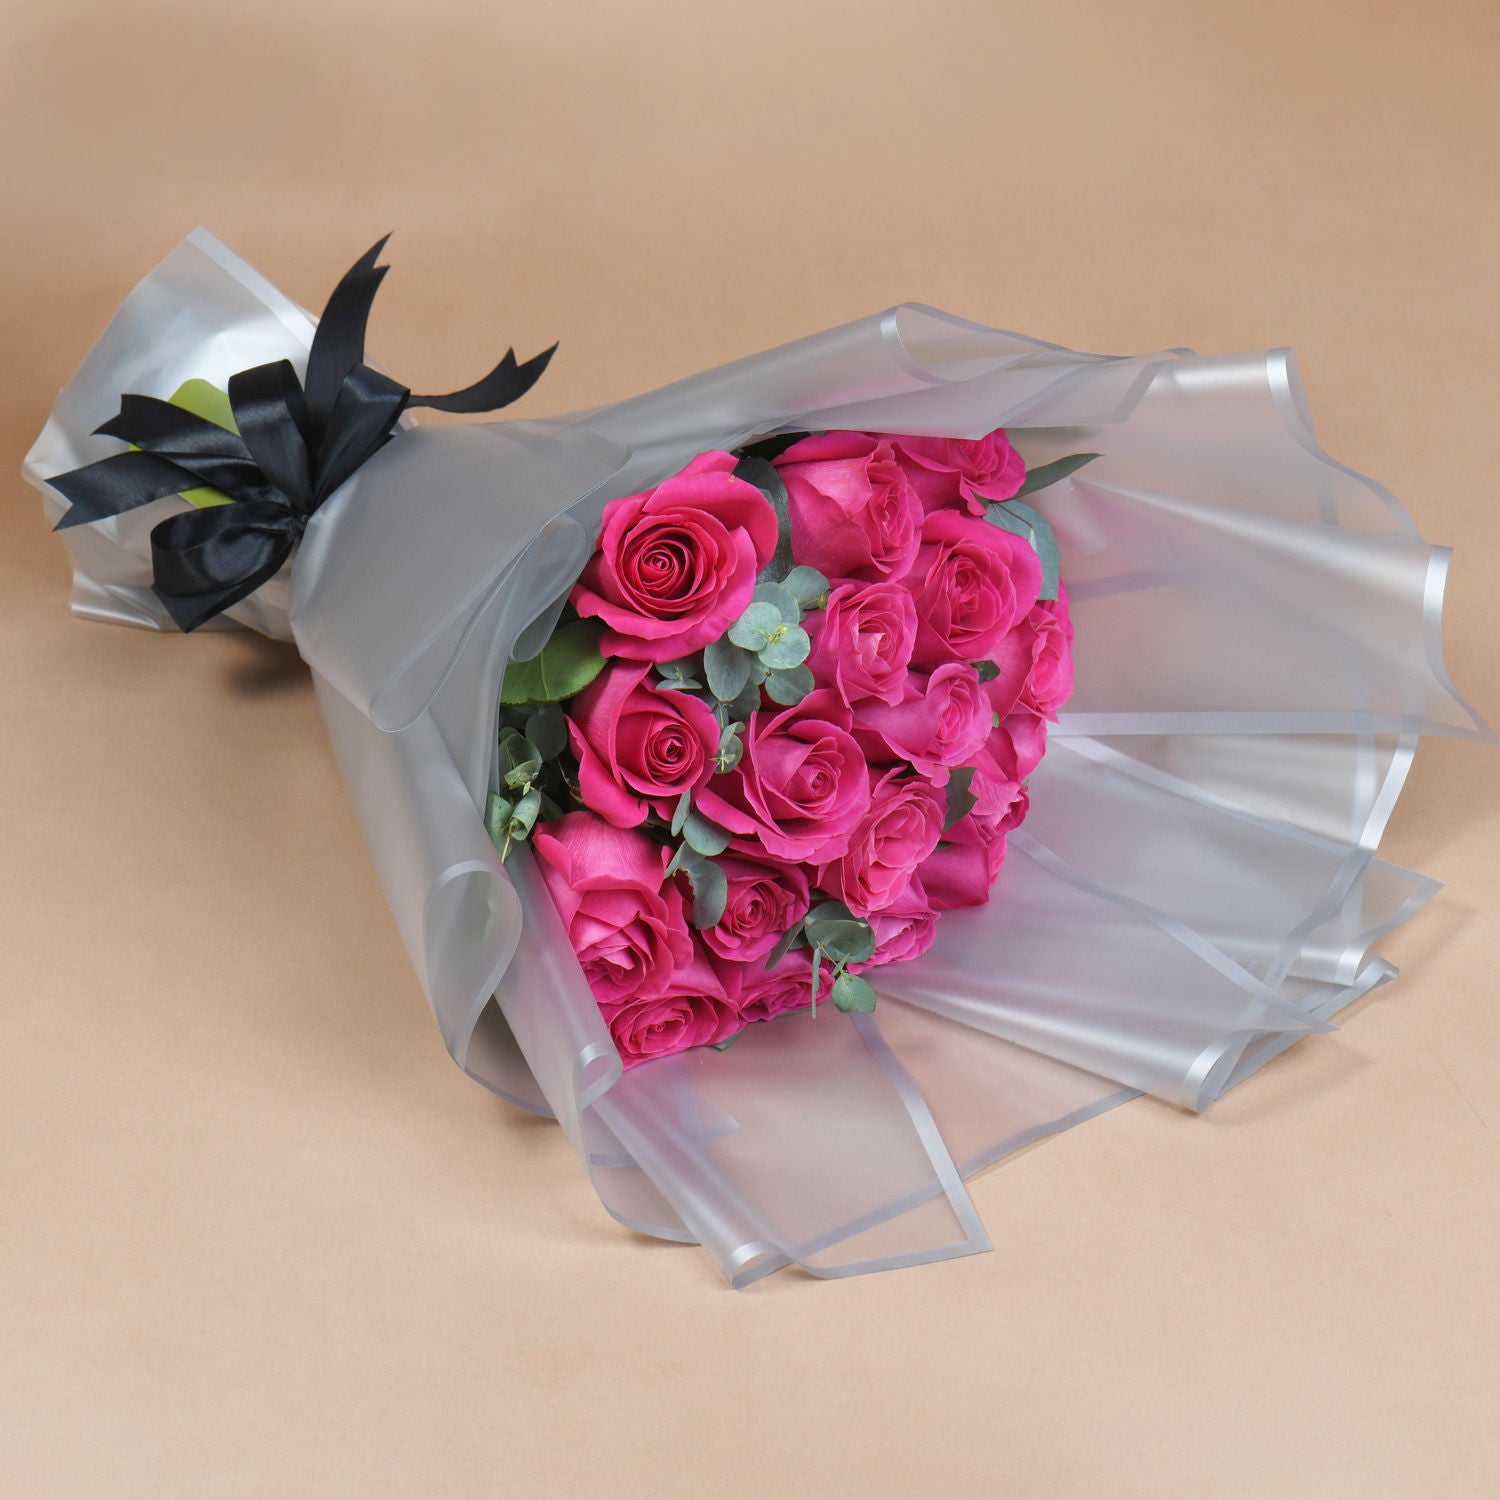 Ravishing Bouquet of 20 Pink Roses